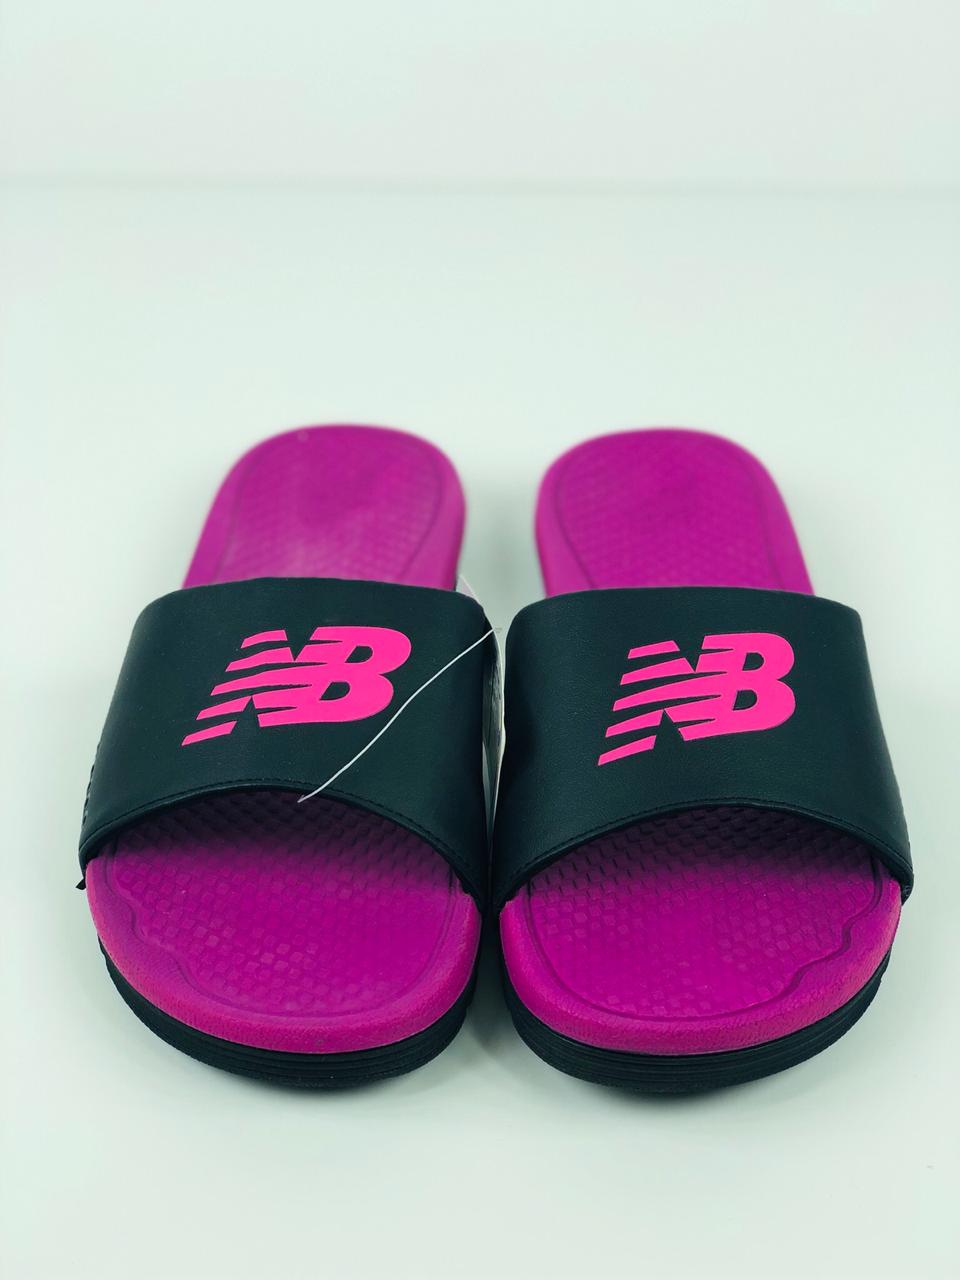 new balance women's slide sandals